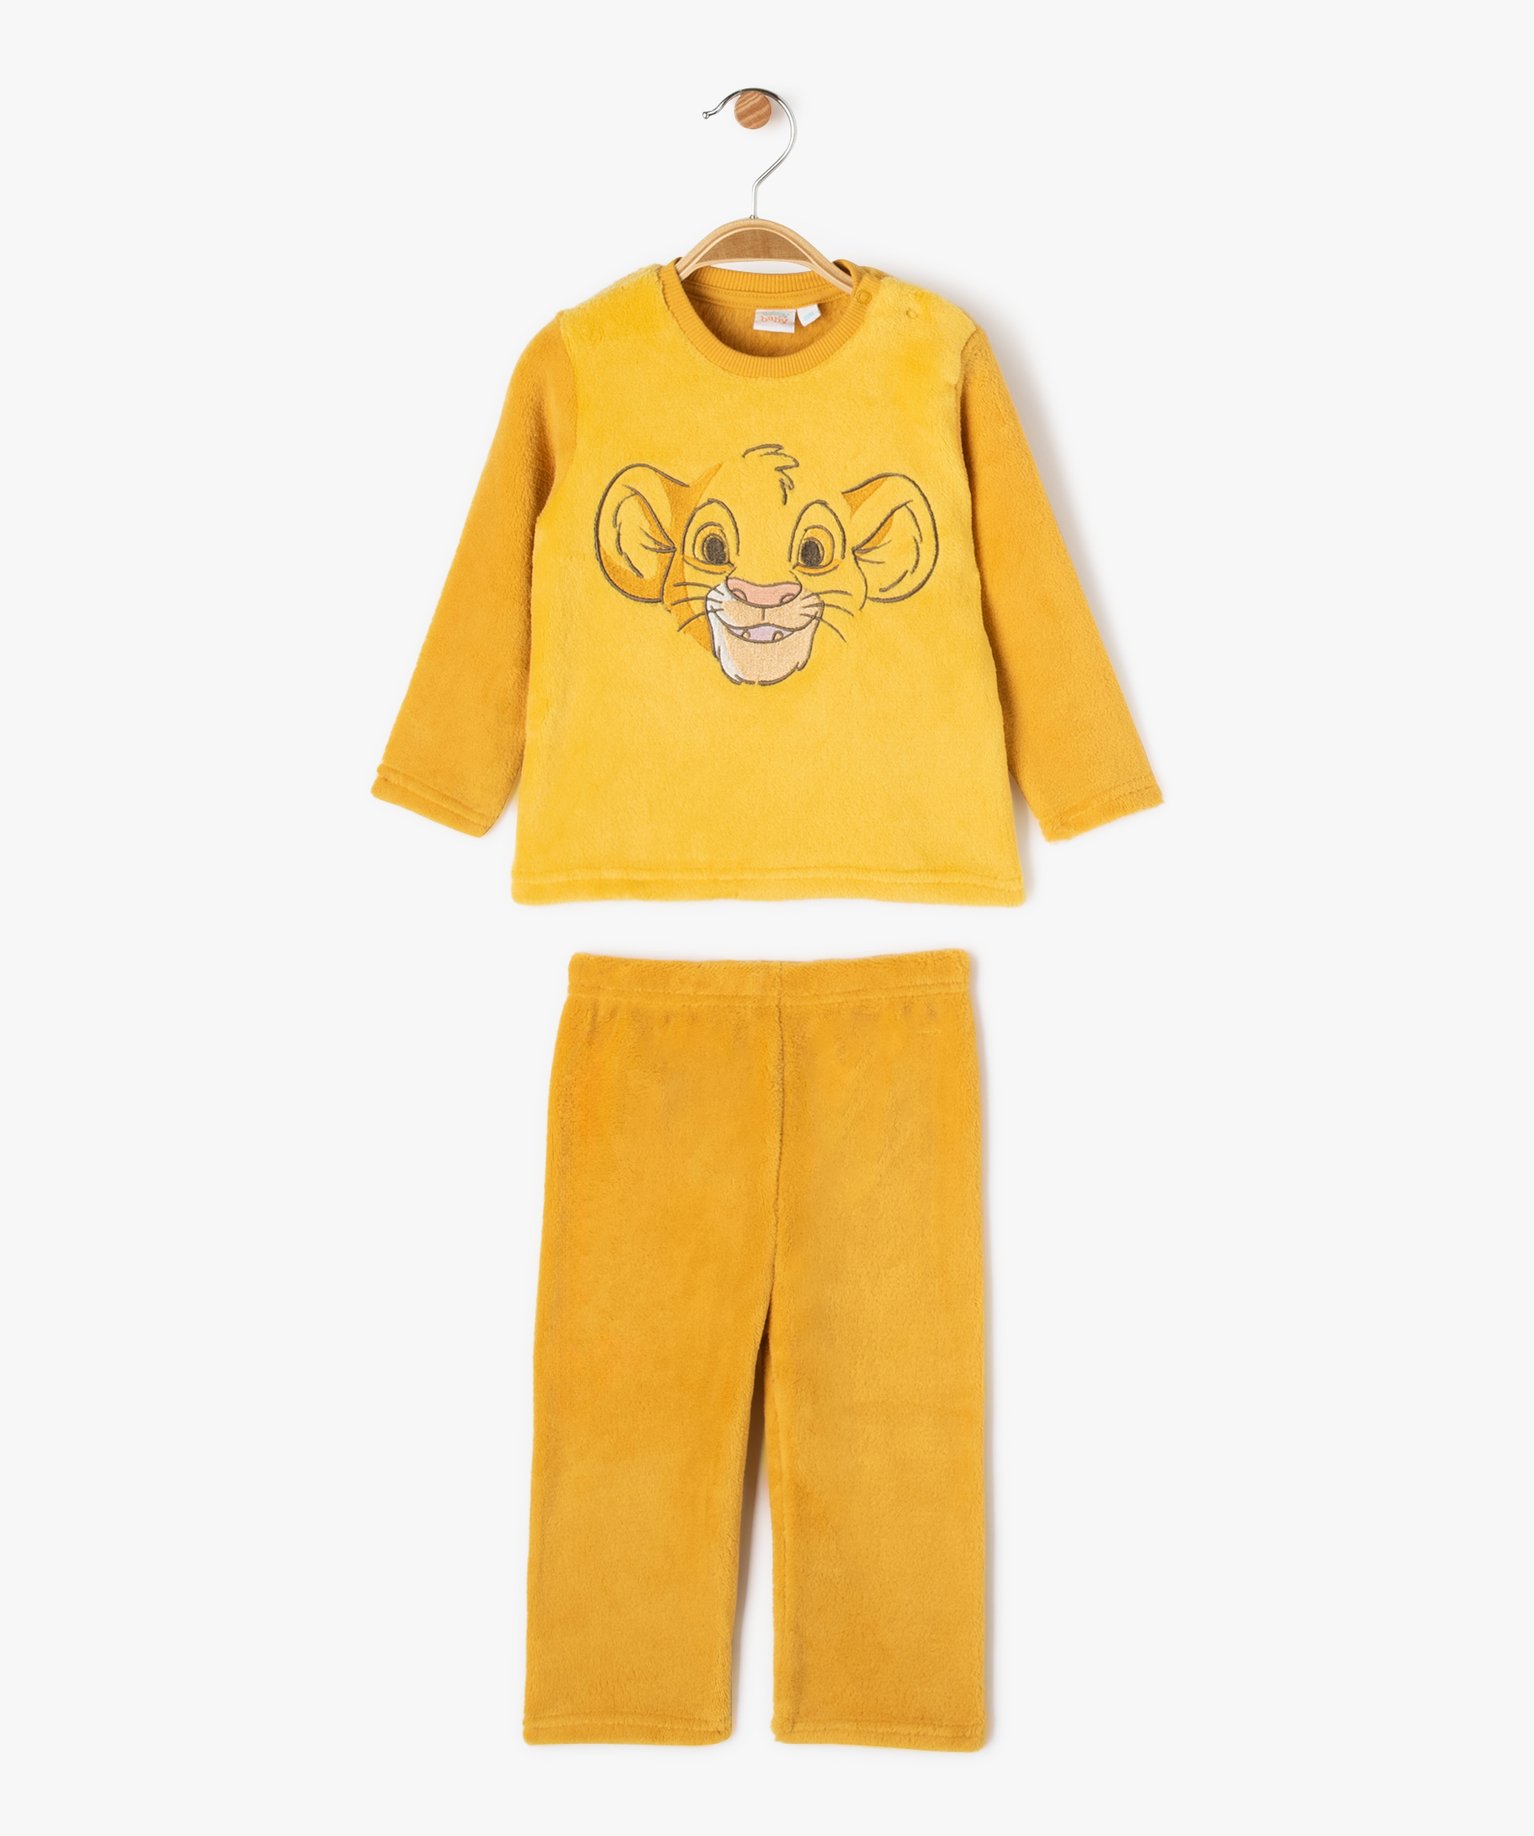 Pyjama 2 pièces velours avec motif Le Roi Lion bébé garçon - Disney - 12M - jaune - DISNEY BABY